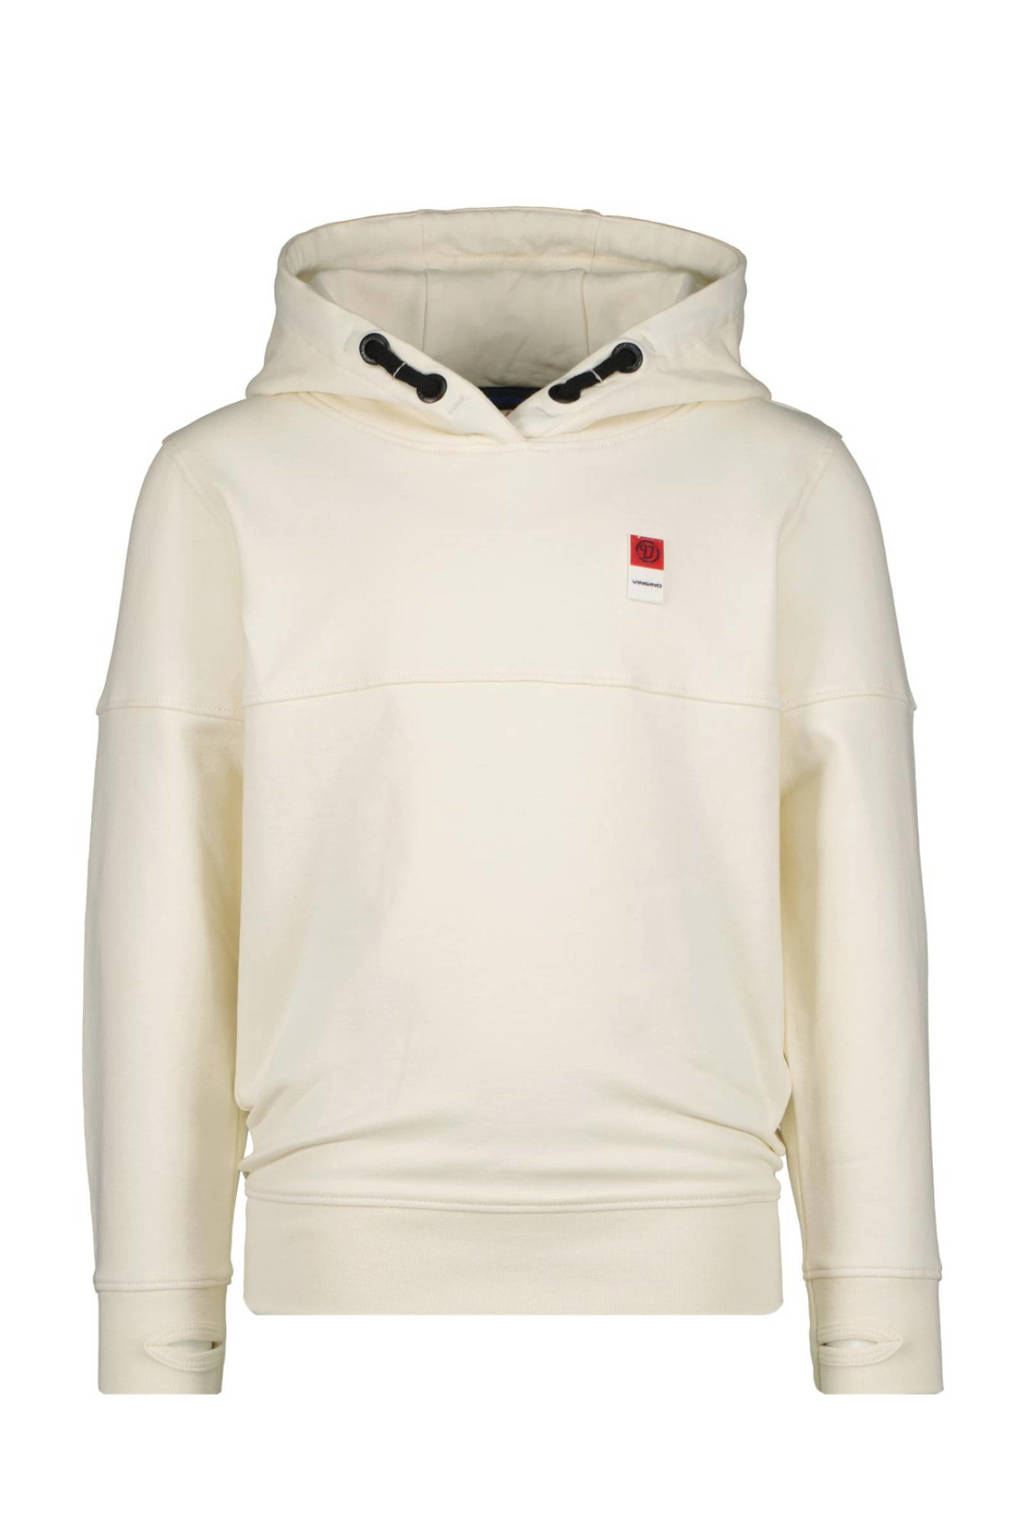 Witte jongens Vingino Essentials hoodie van sweat materiaal met lange mouwen en capuchon